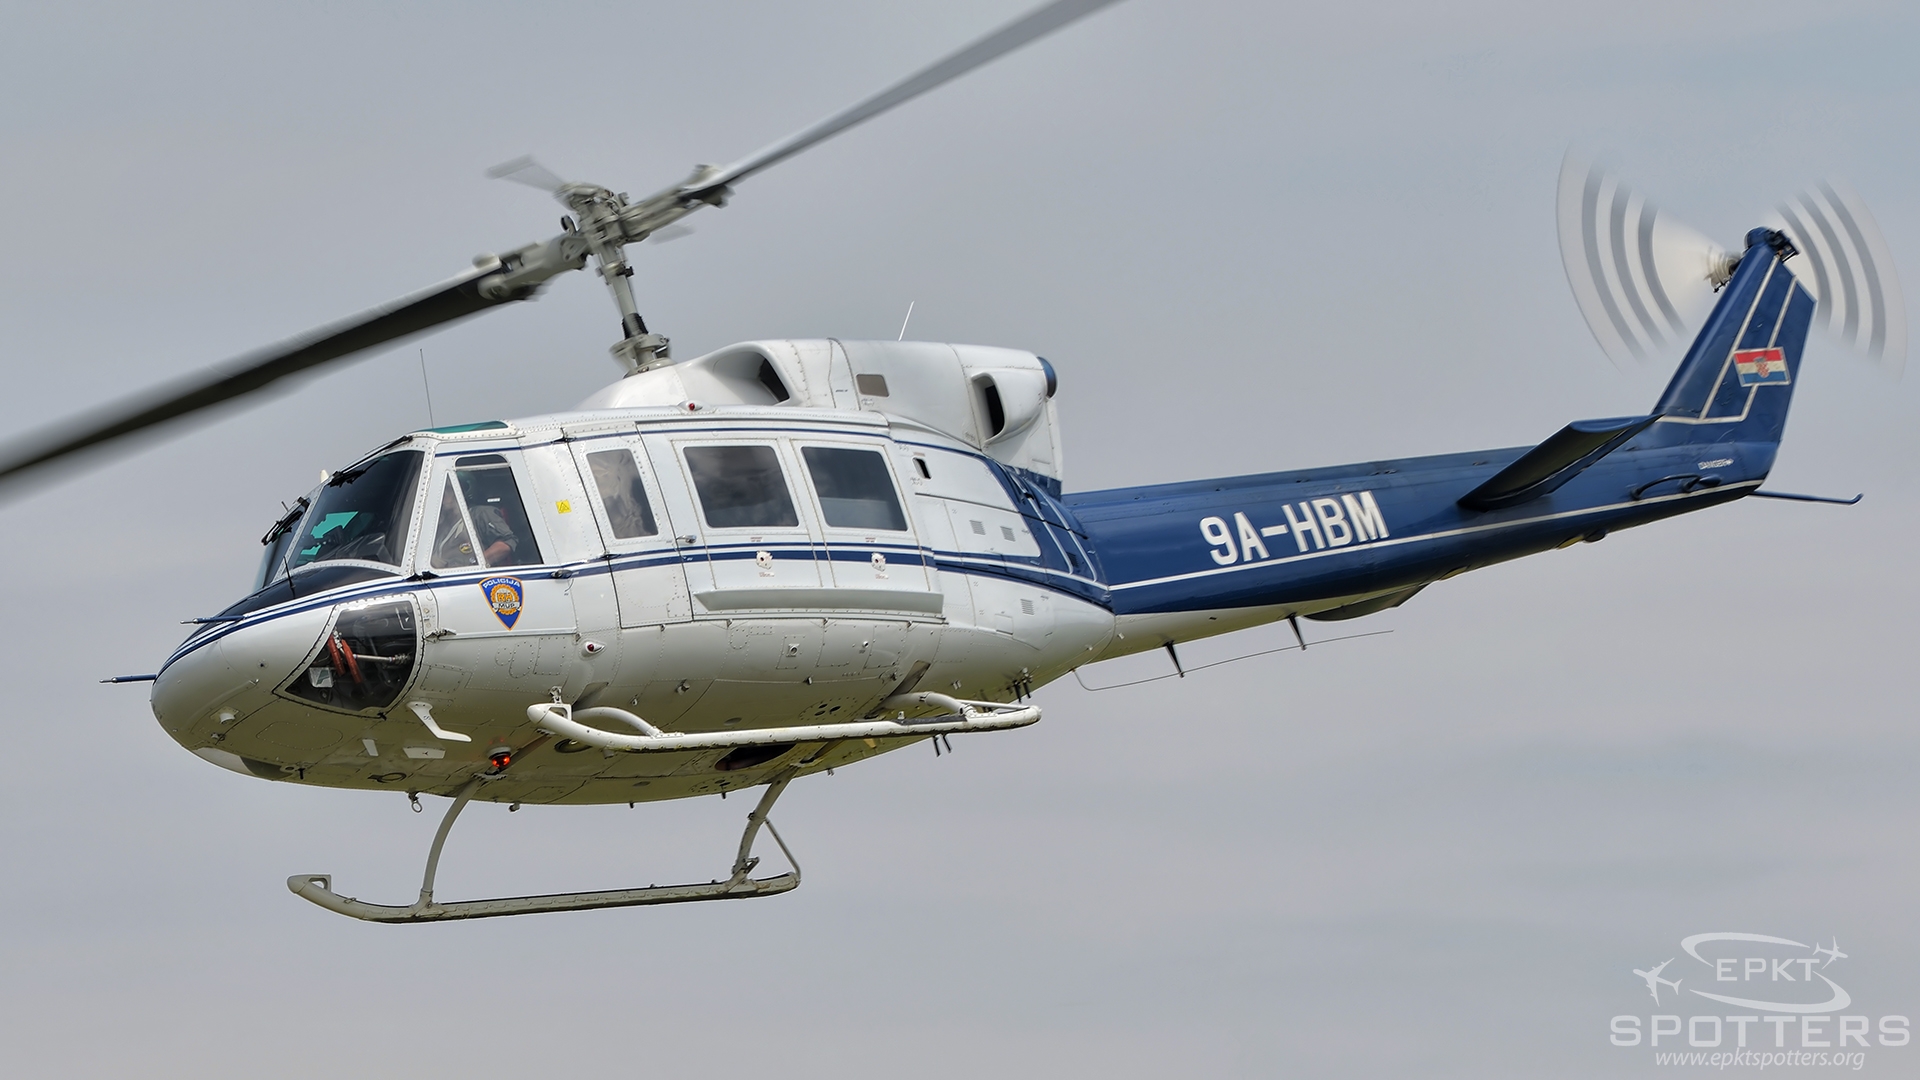 9A-HBM - Agusta-Bell AB 212 ASW (Croatia - Police) / Varaždin Airport - Varaždin Croatia [LDVA/]